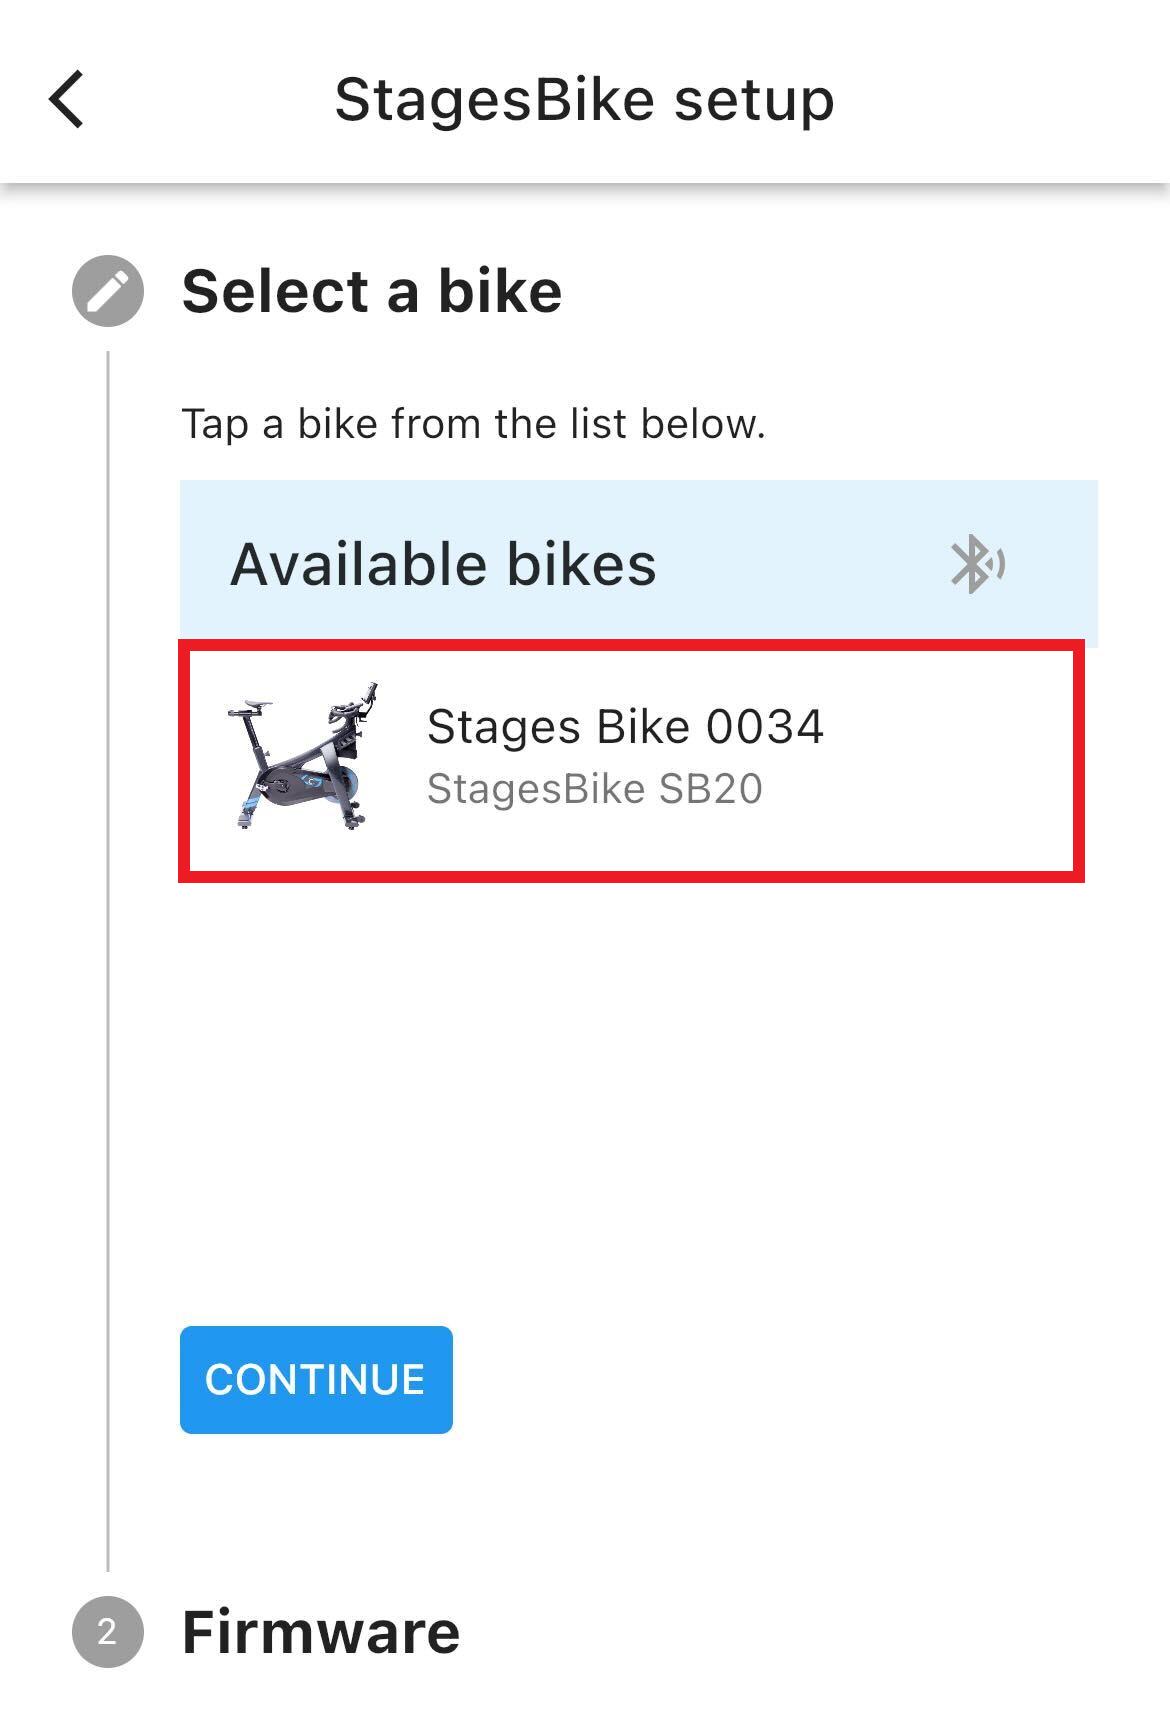 突出显示您的StagesBike的可用单车